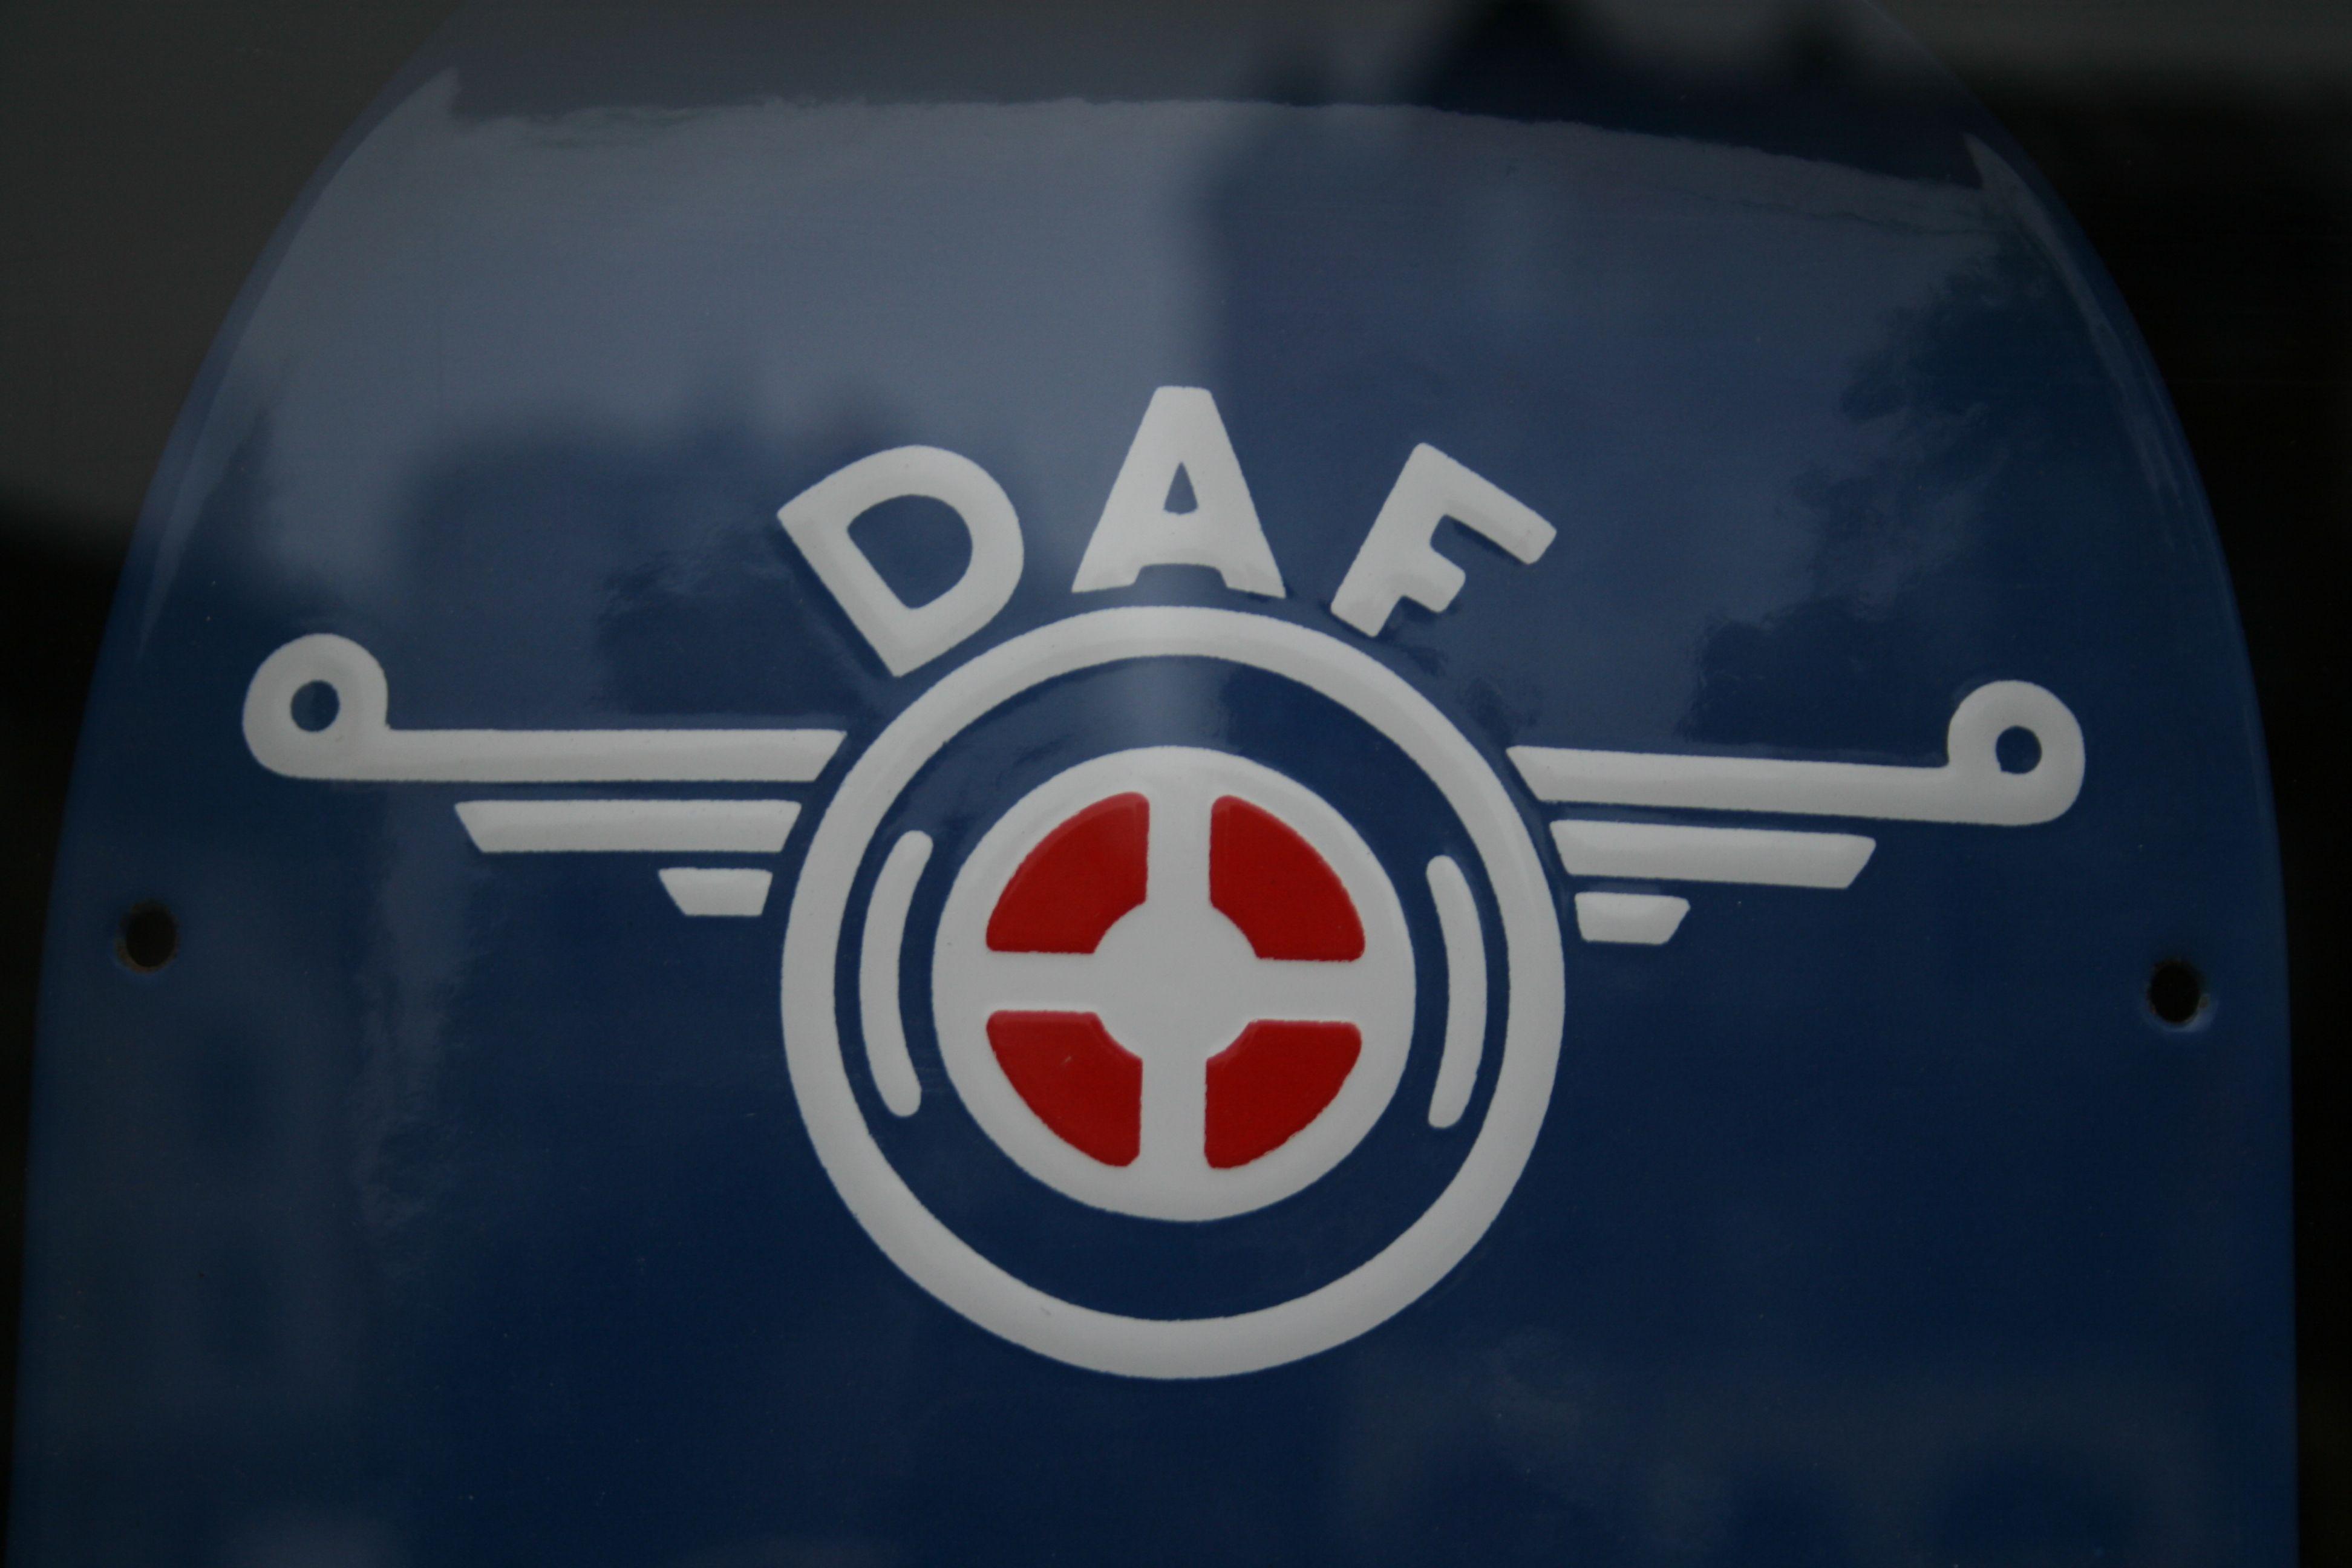 DAF Logo - File:DAF-Logo.JPG - Wikimedia Commons